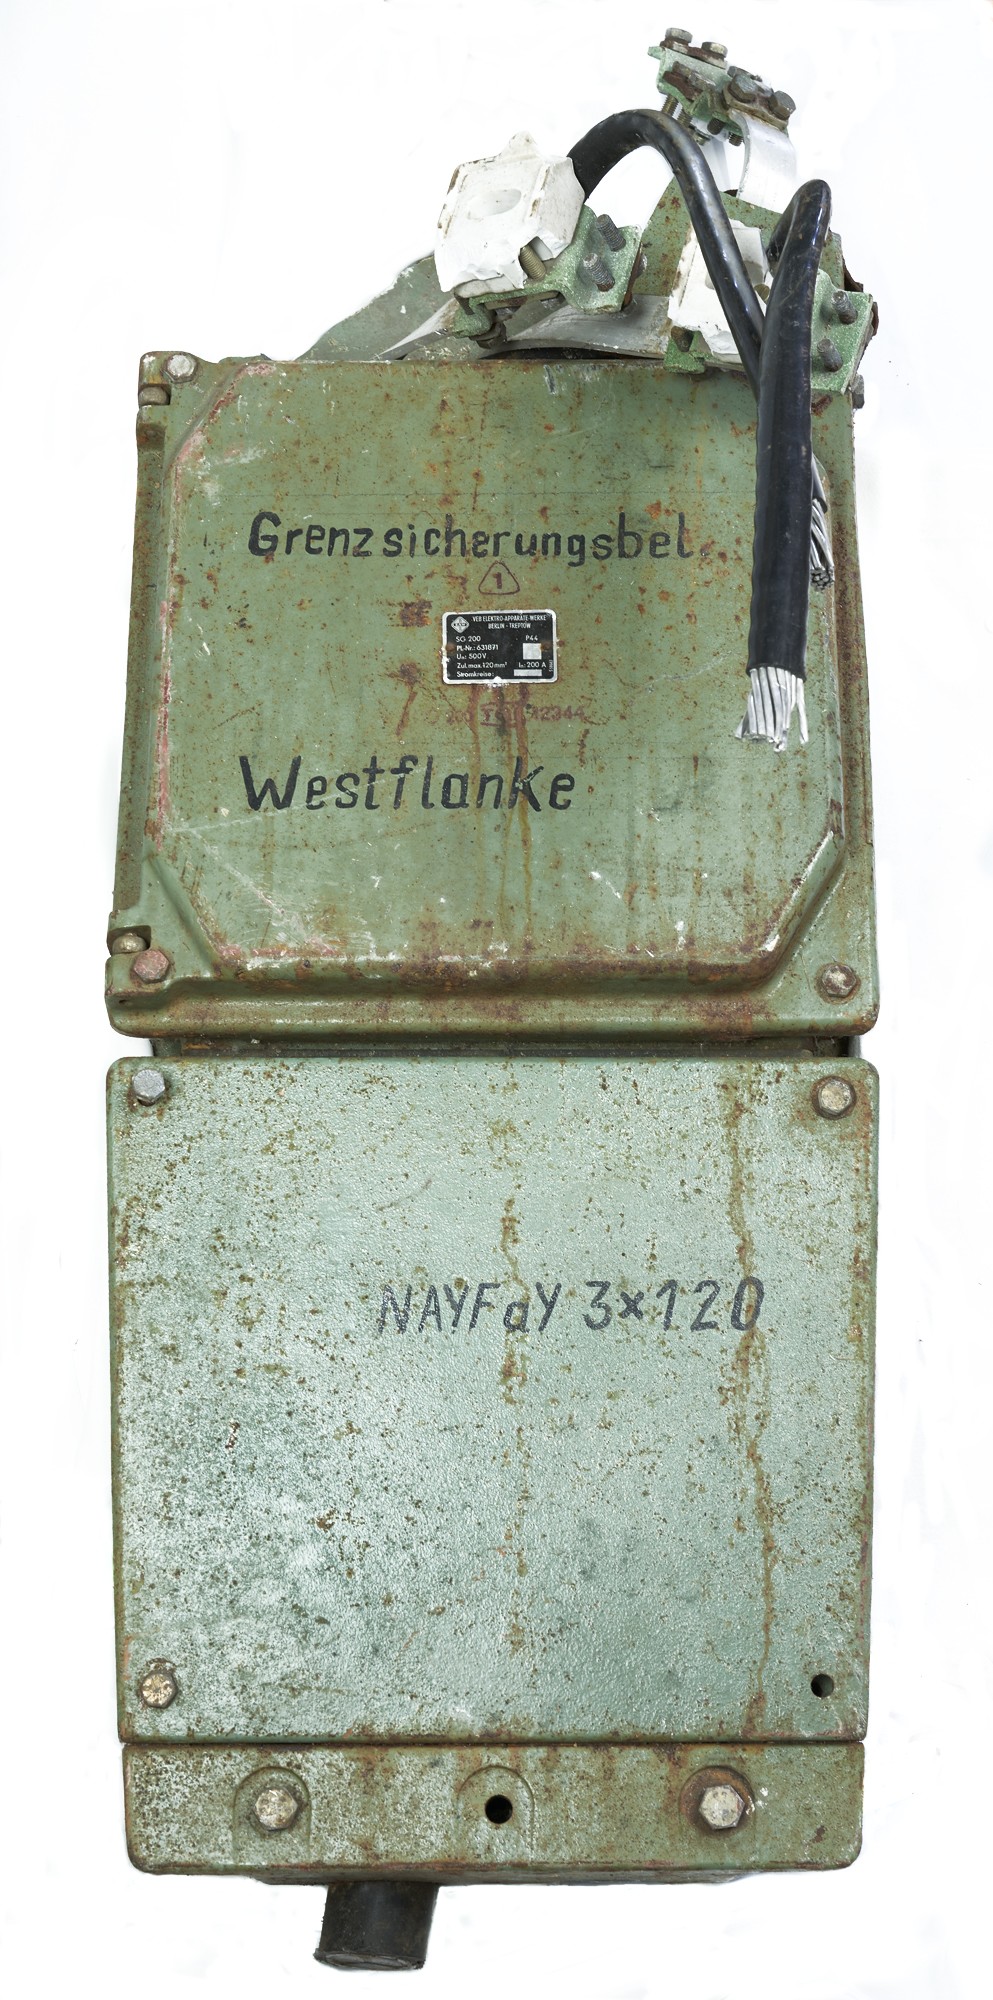 Reste Westflanke (Checkpoint Bravo - Erinnerungs- und Begegnungsstätte Grenzkontrollpunkt Drewitz-Dreilinden CC BY-NC-SA)